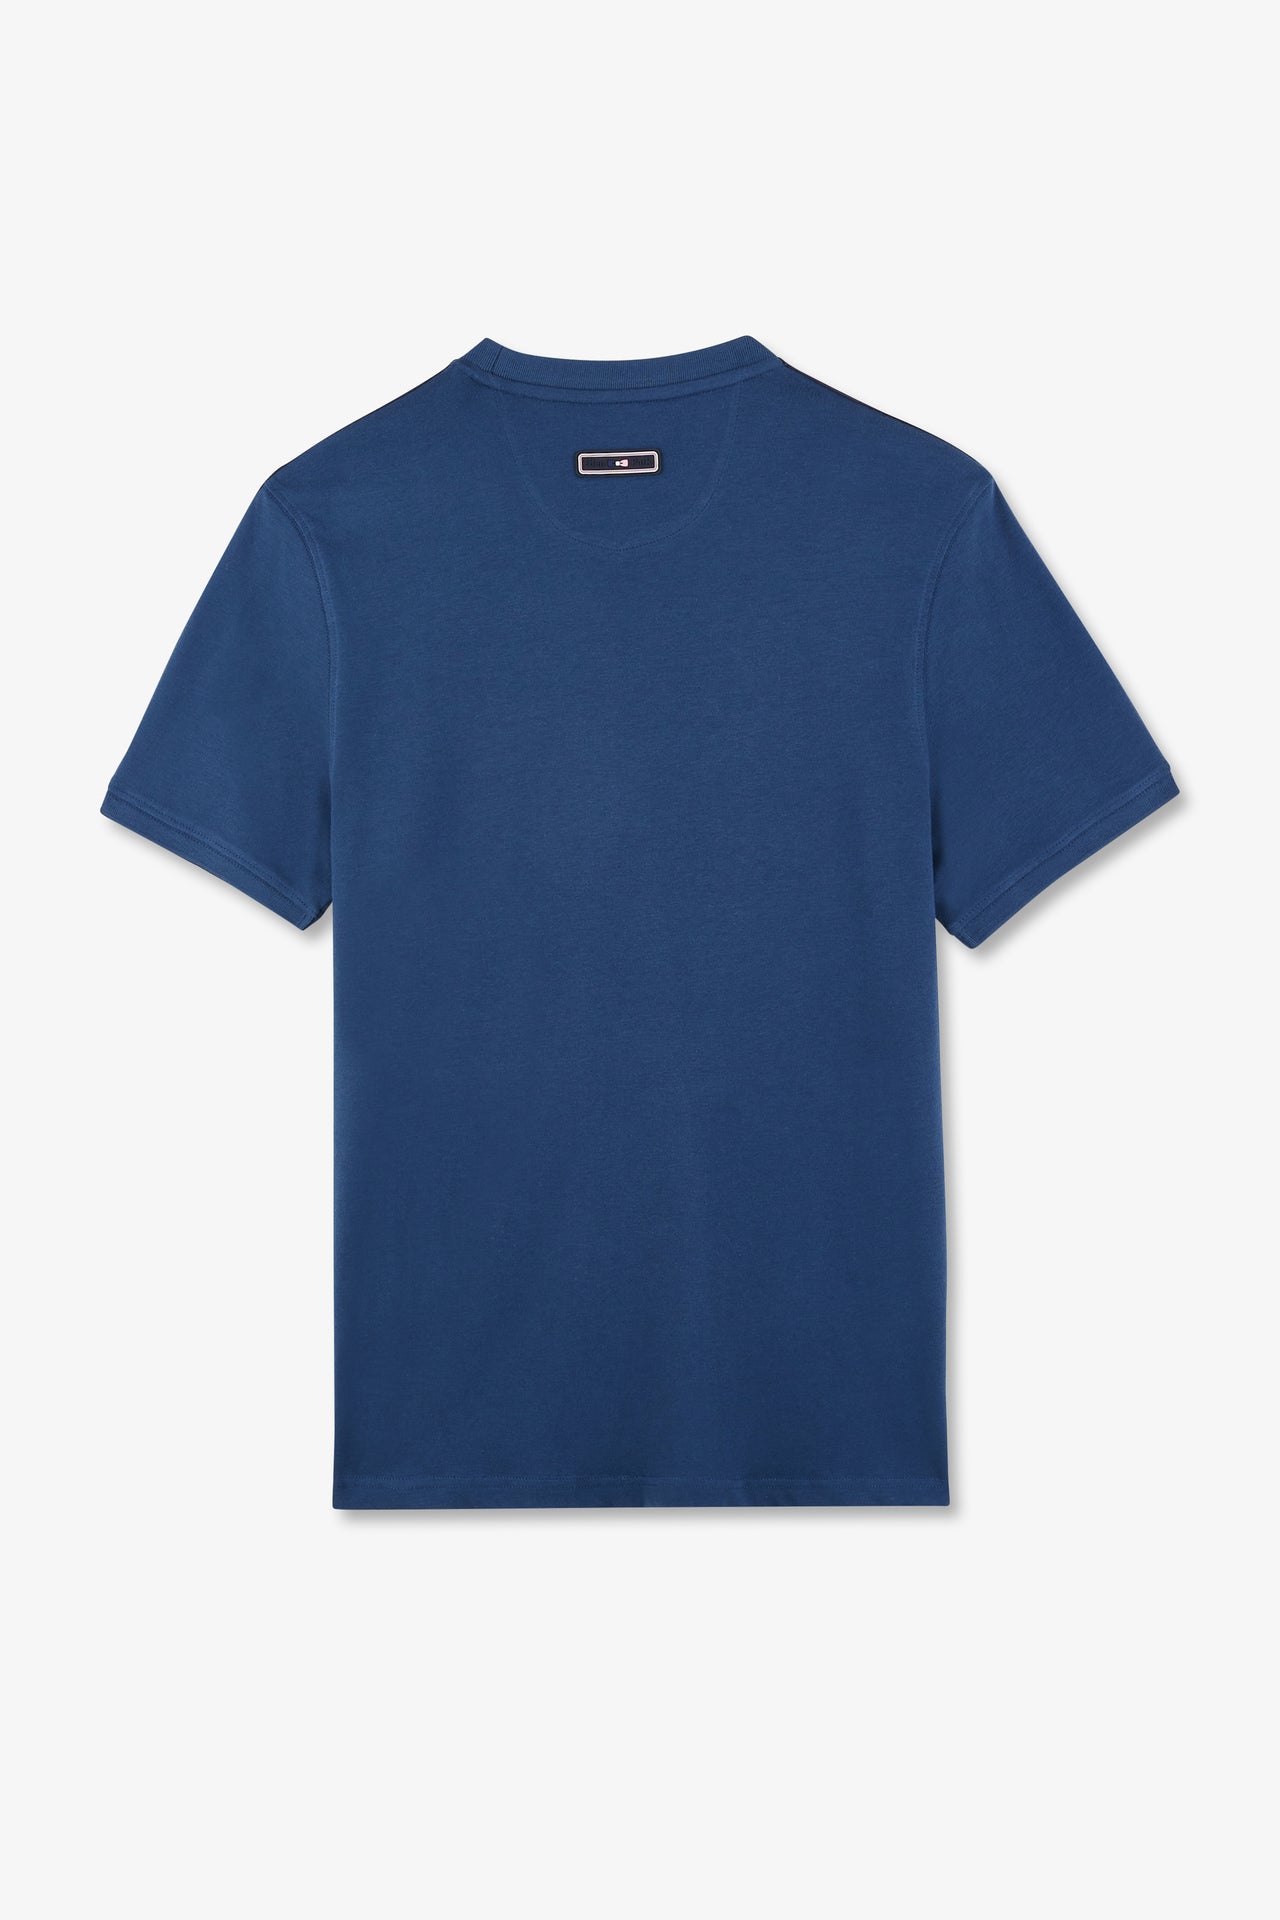 T-shirt manches courtes marine en coton galons épaules tricolores - Image 5